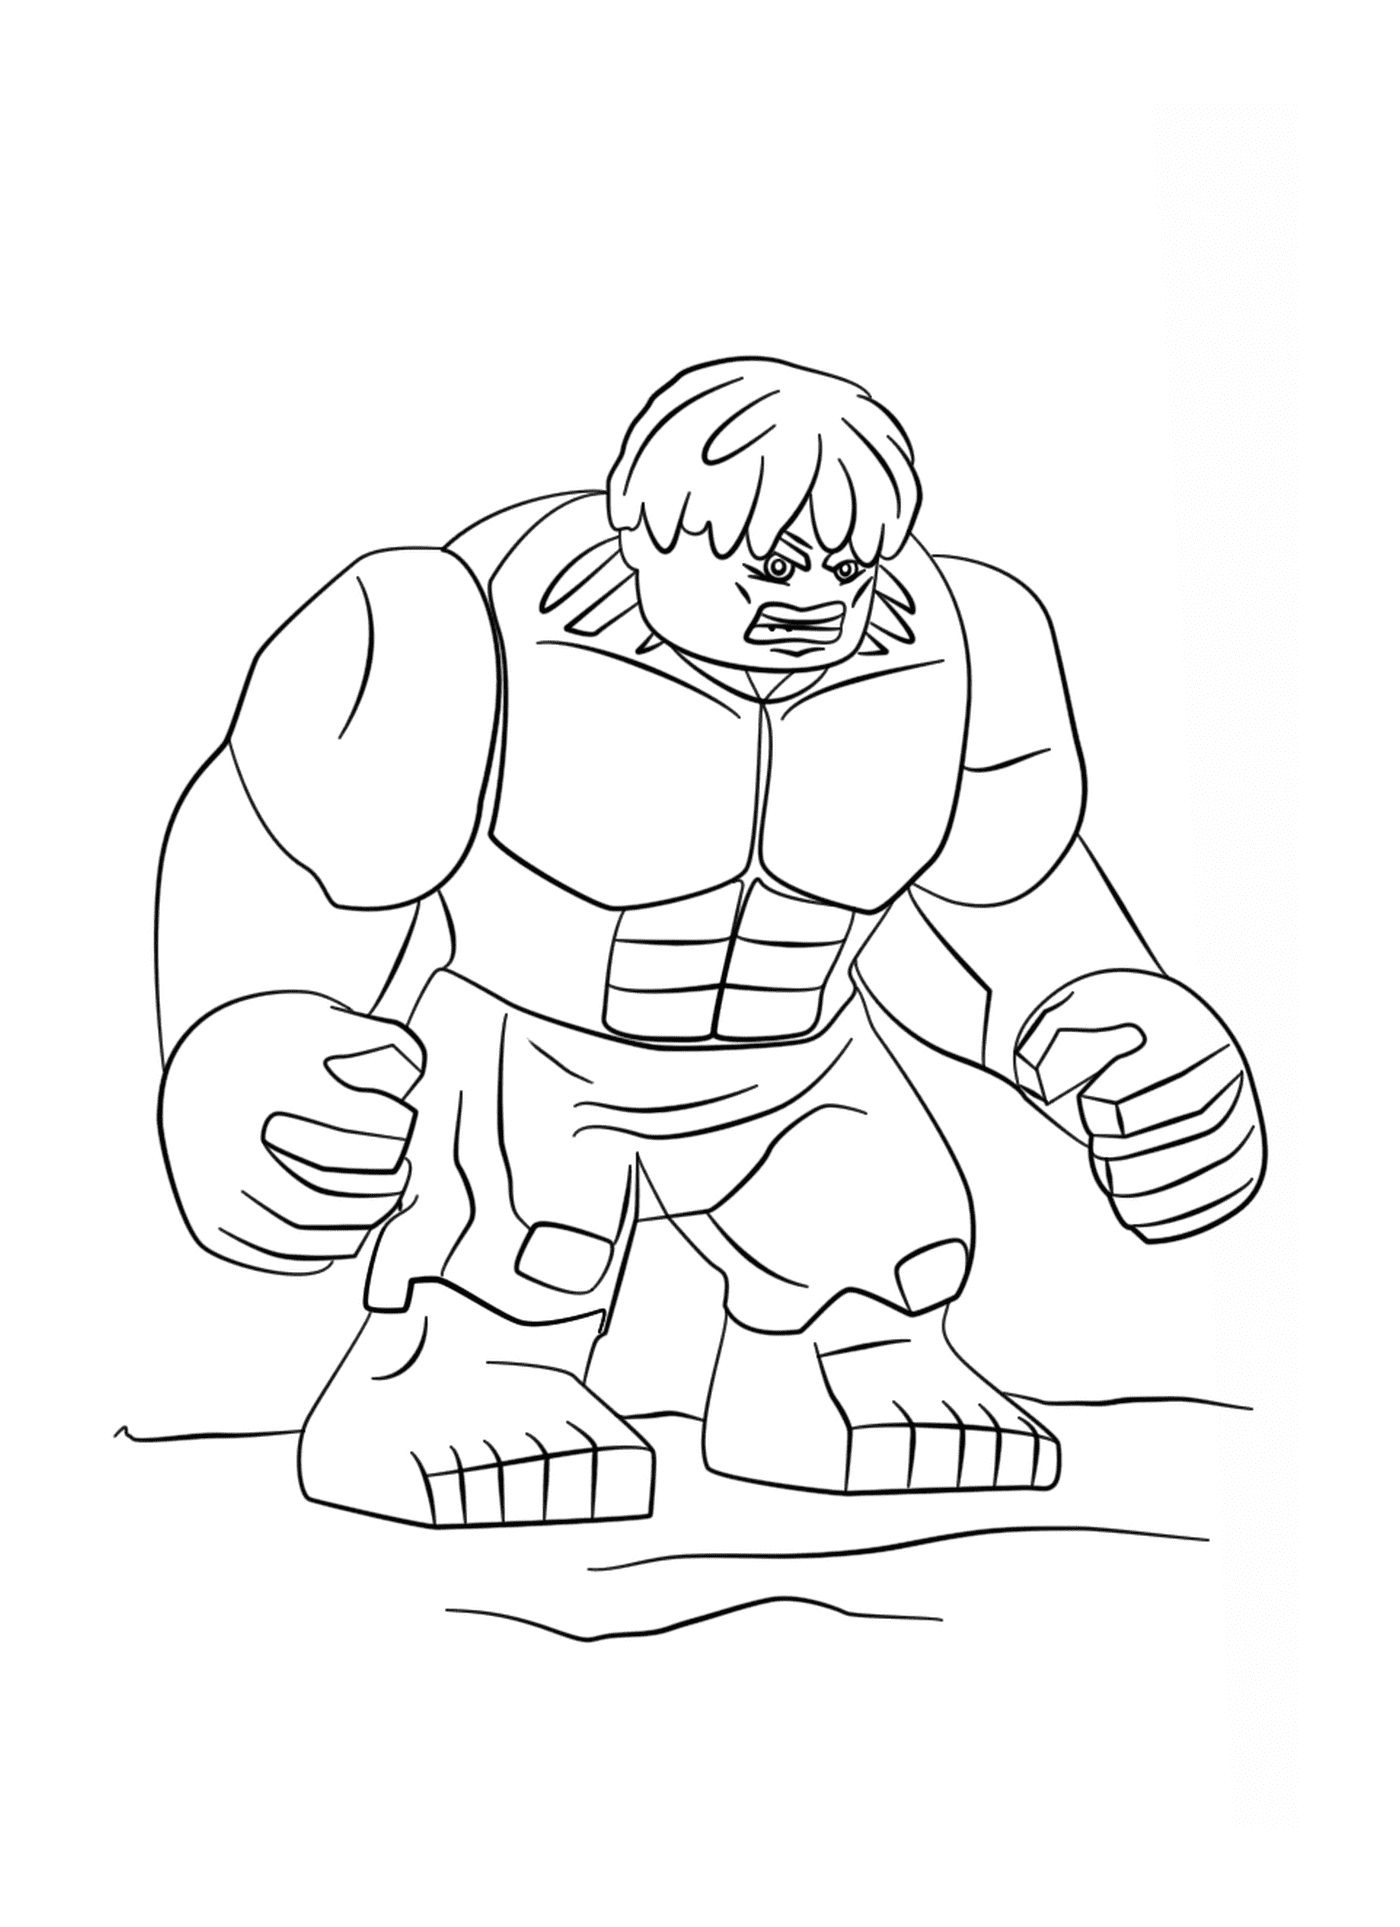  Hulk, o imponente personagem dos desenhos animados 